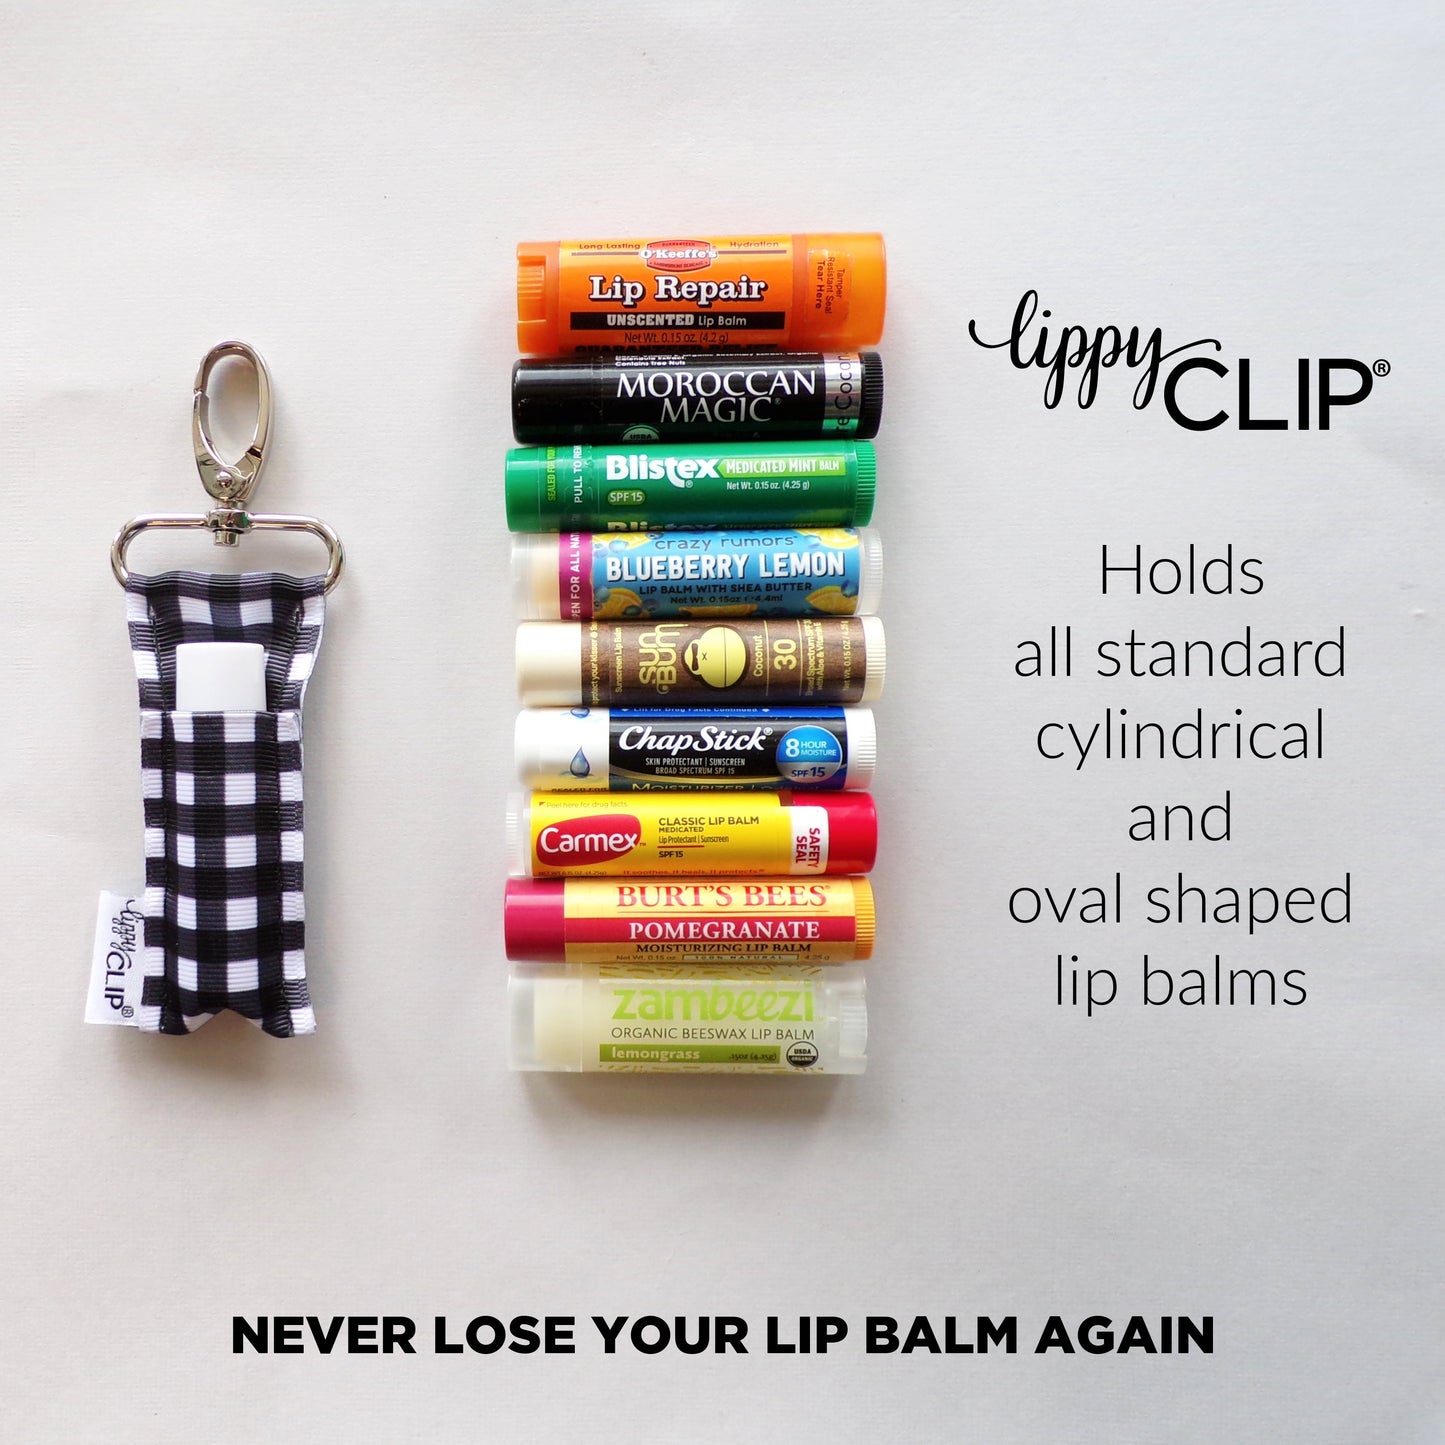 White Horse LippyClip® Lip Balm Holder